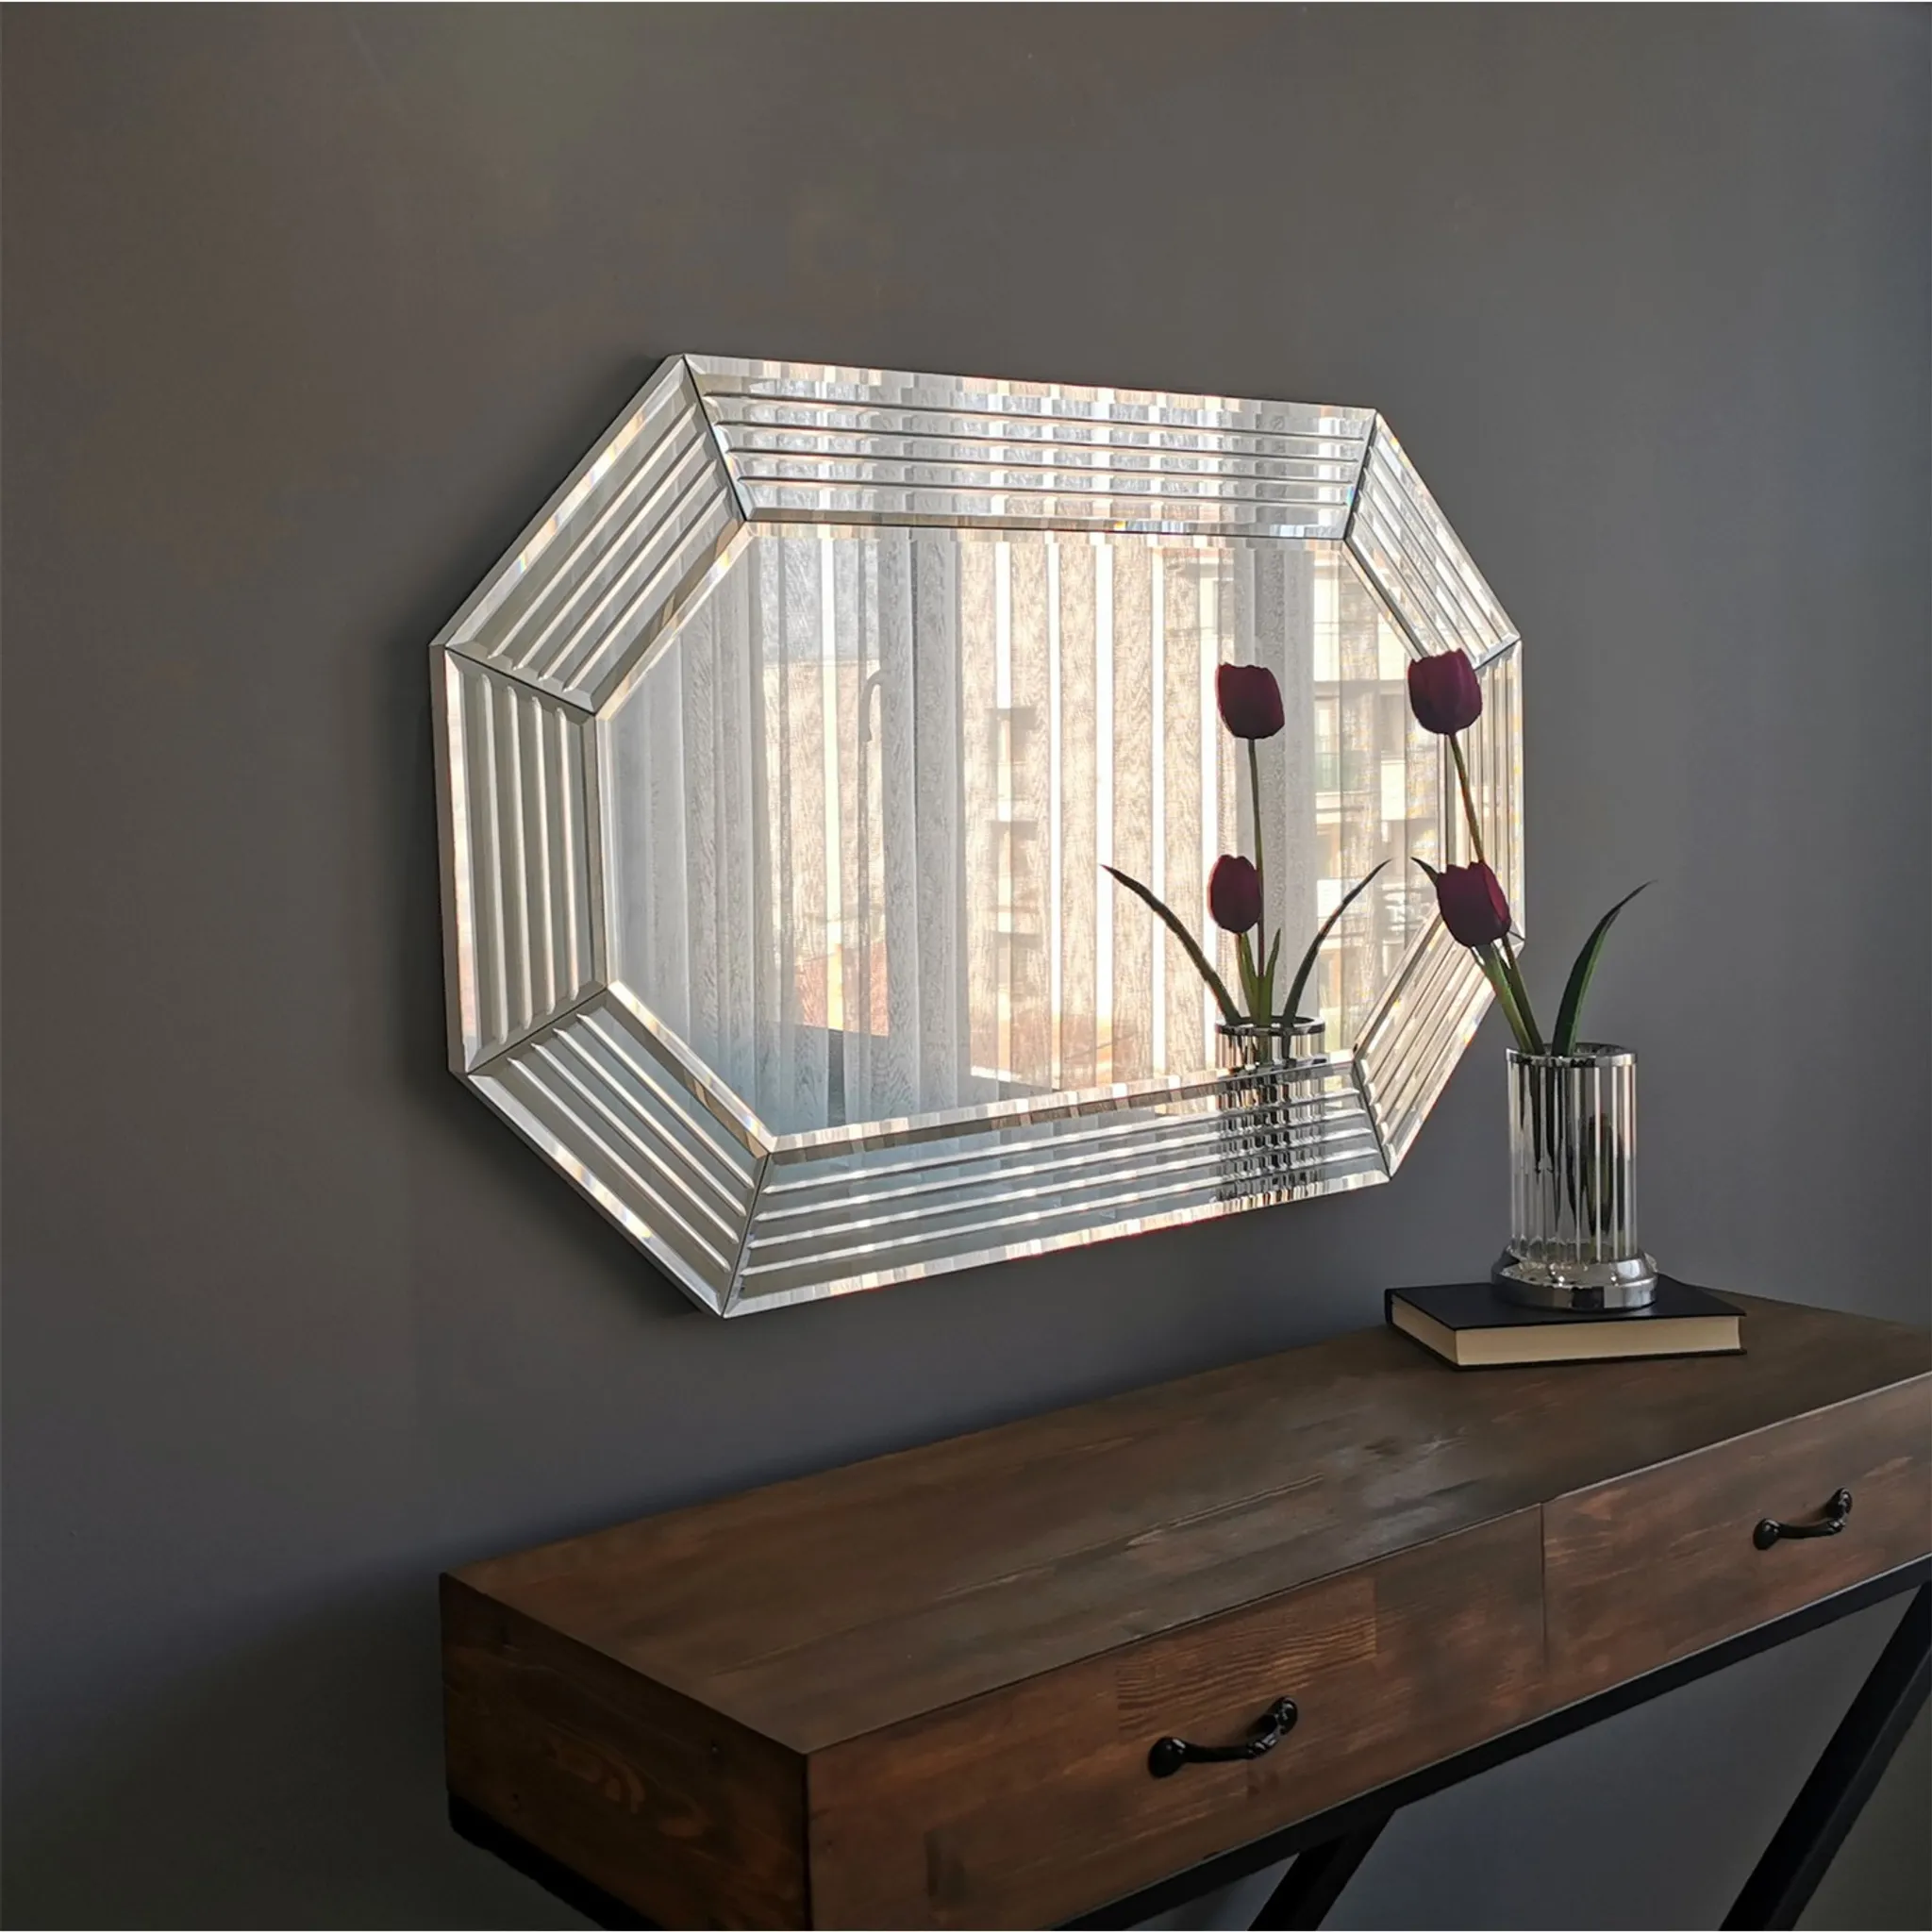  Artloge Dekorative Luxus Kristall Wandspiegel 90×60